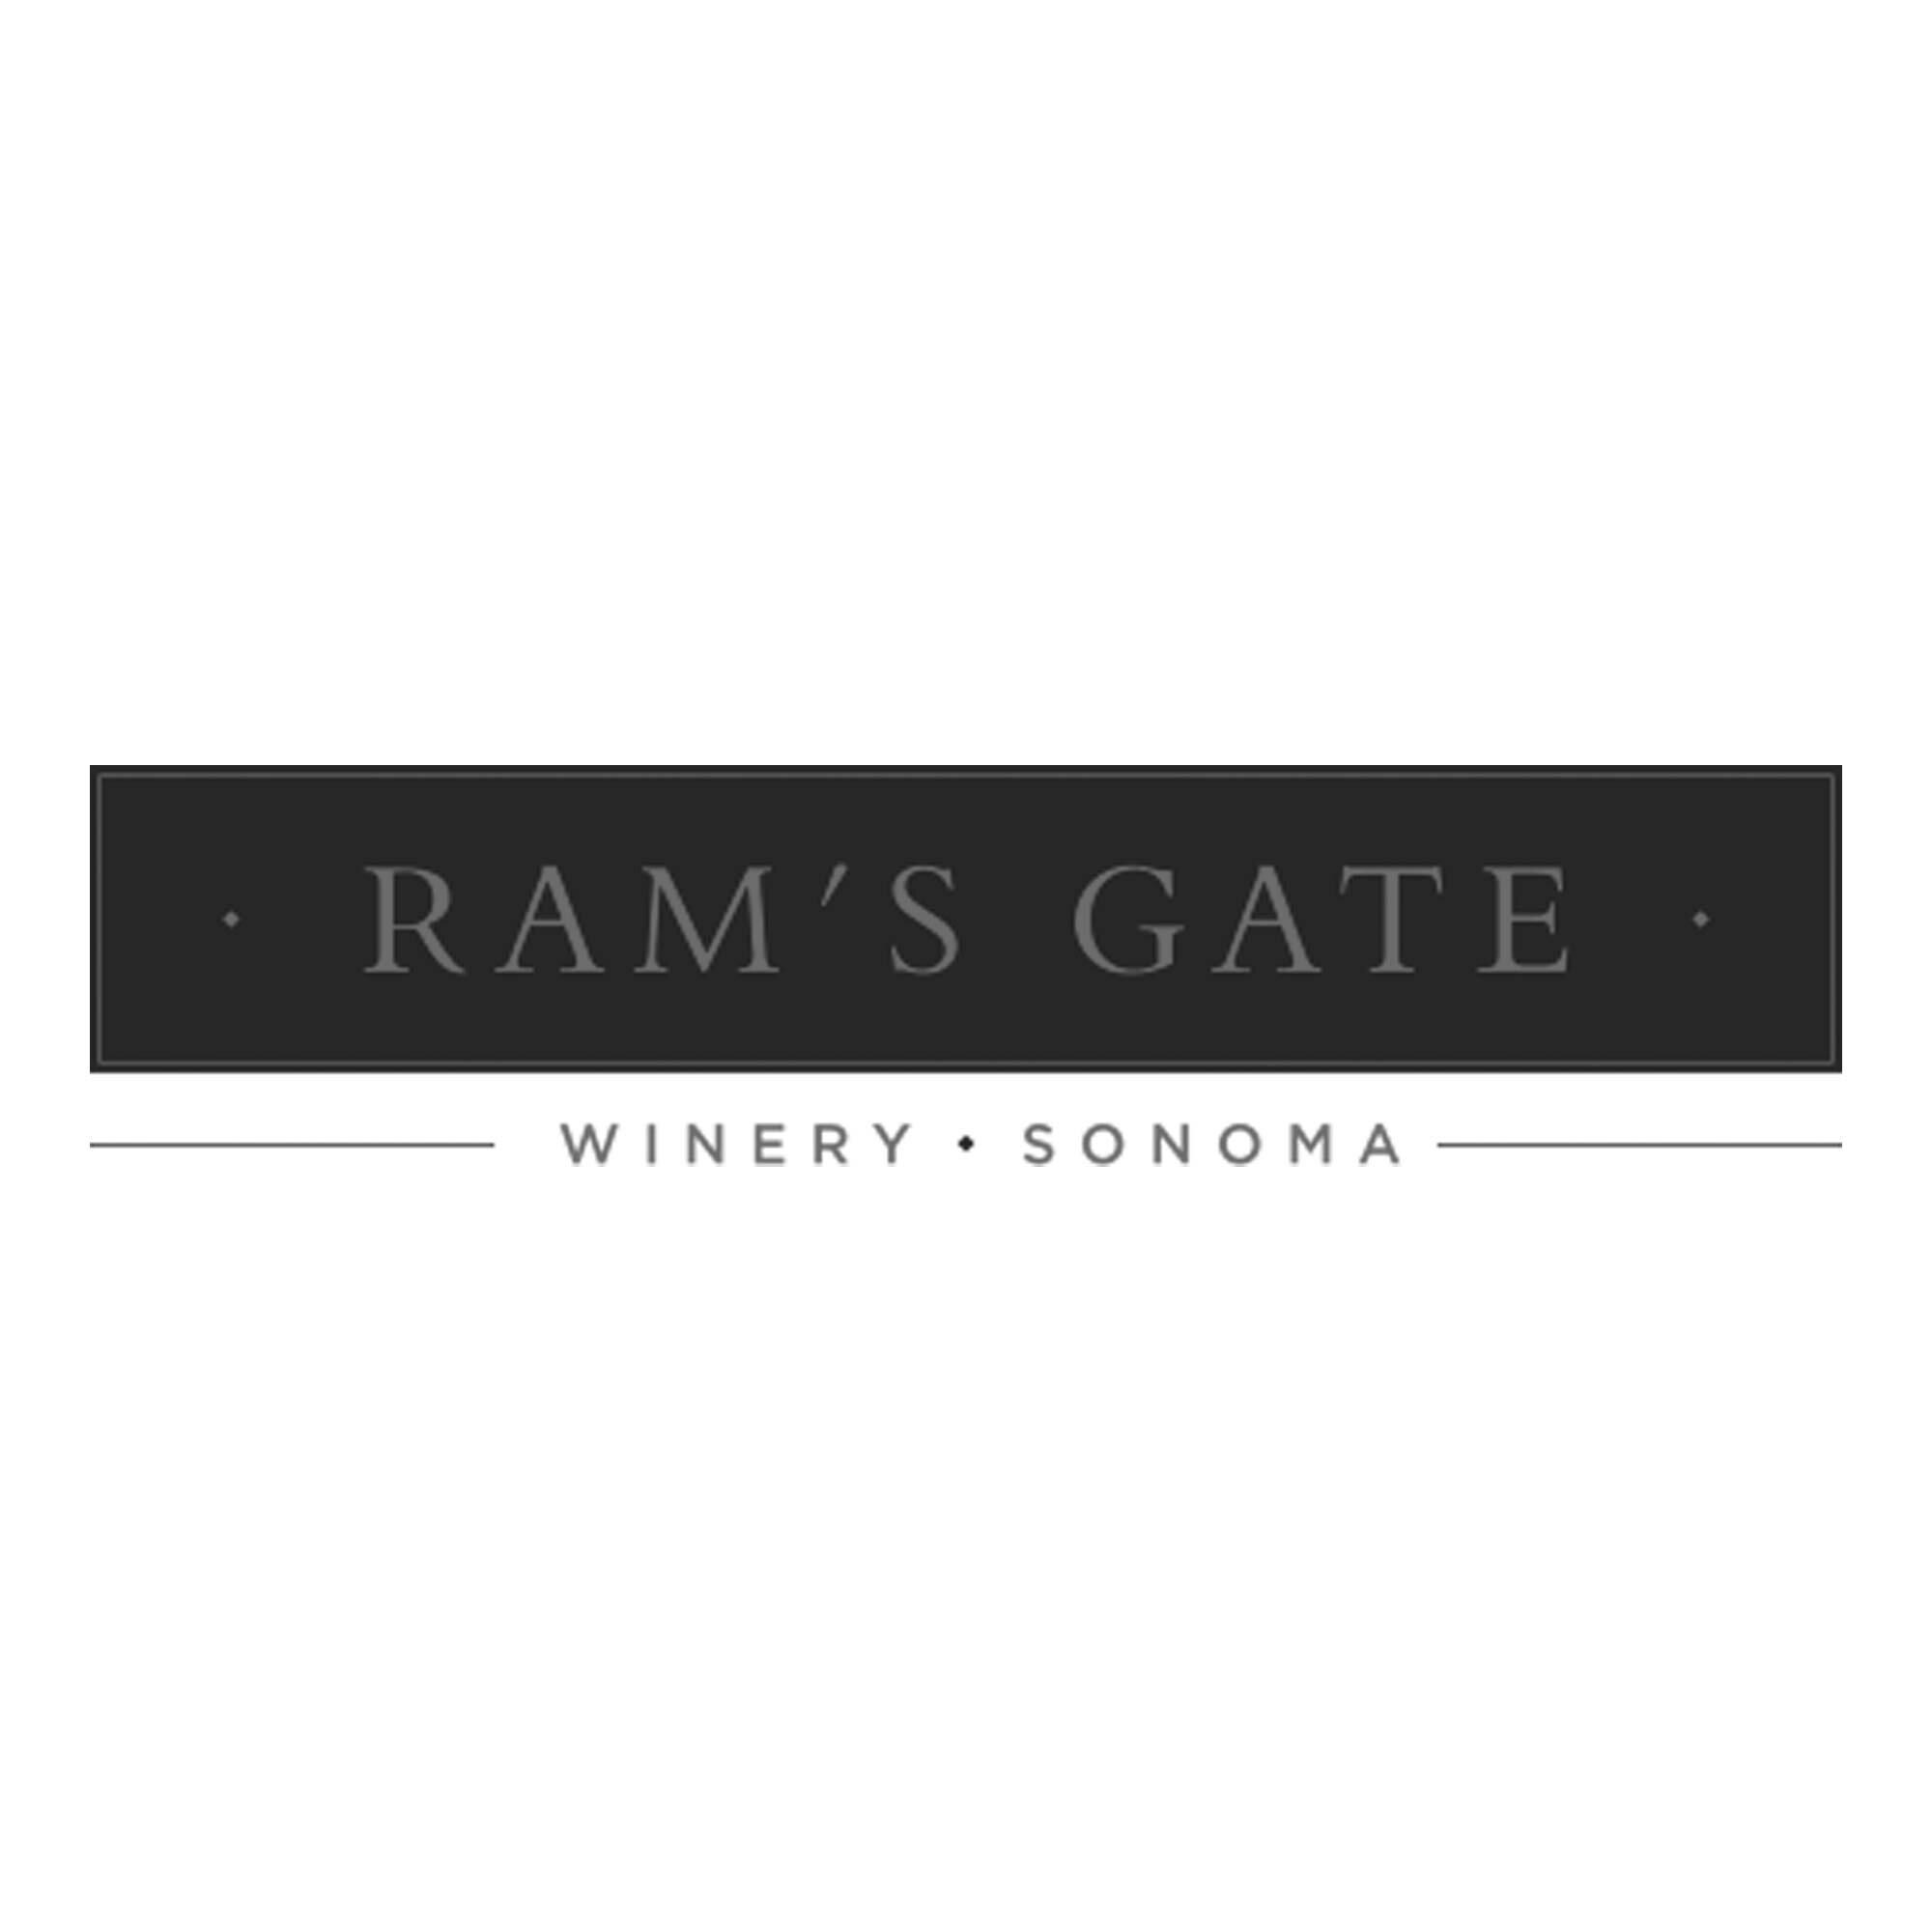 Rams_Gate.jpg